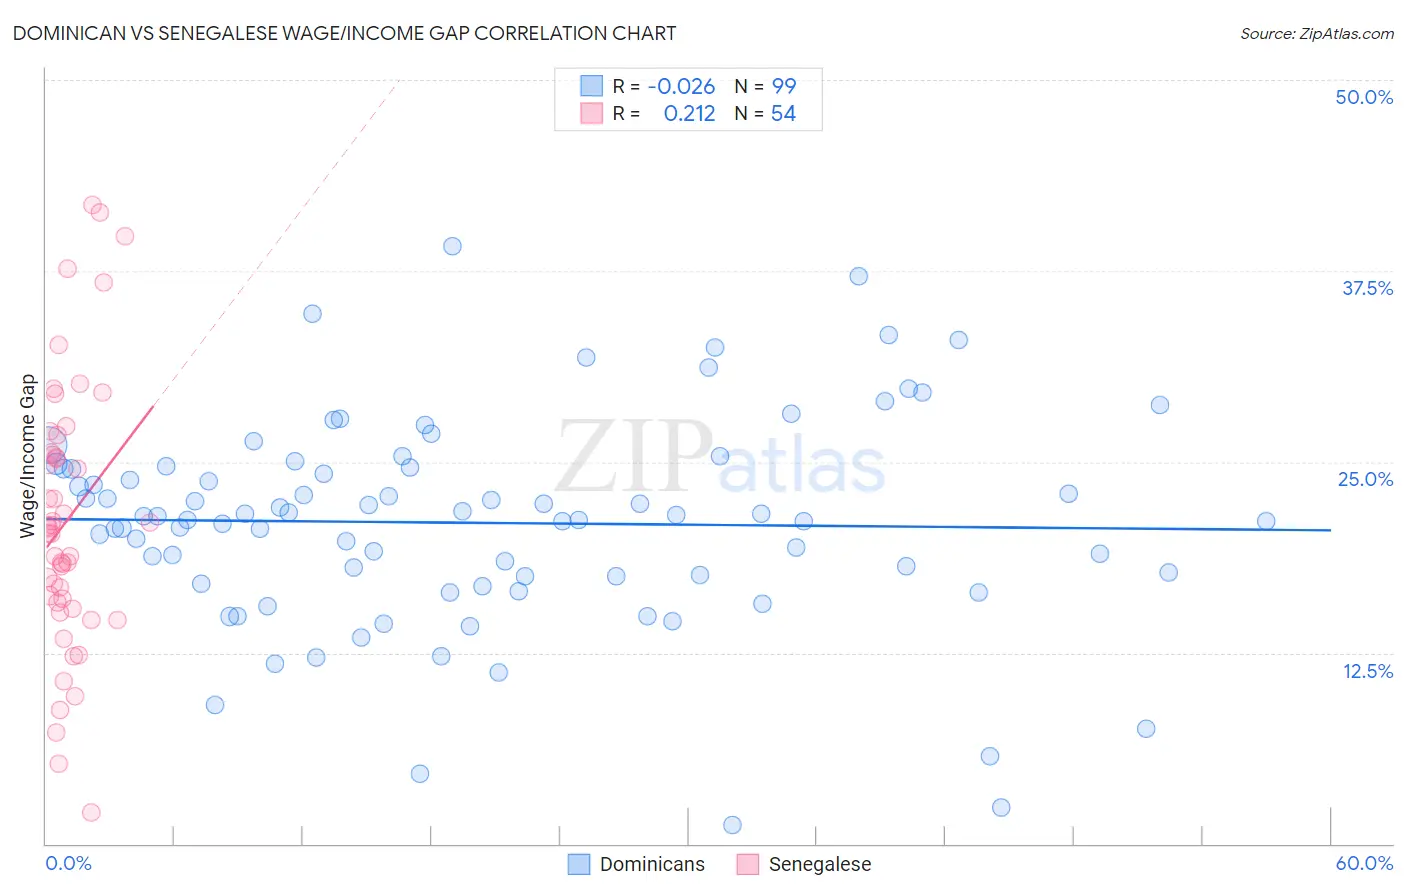 Dominican vs Senegalese Wage/Income Gap